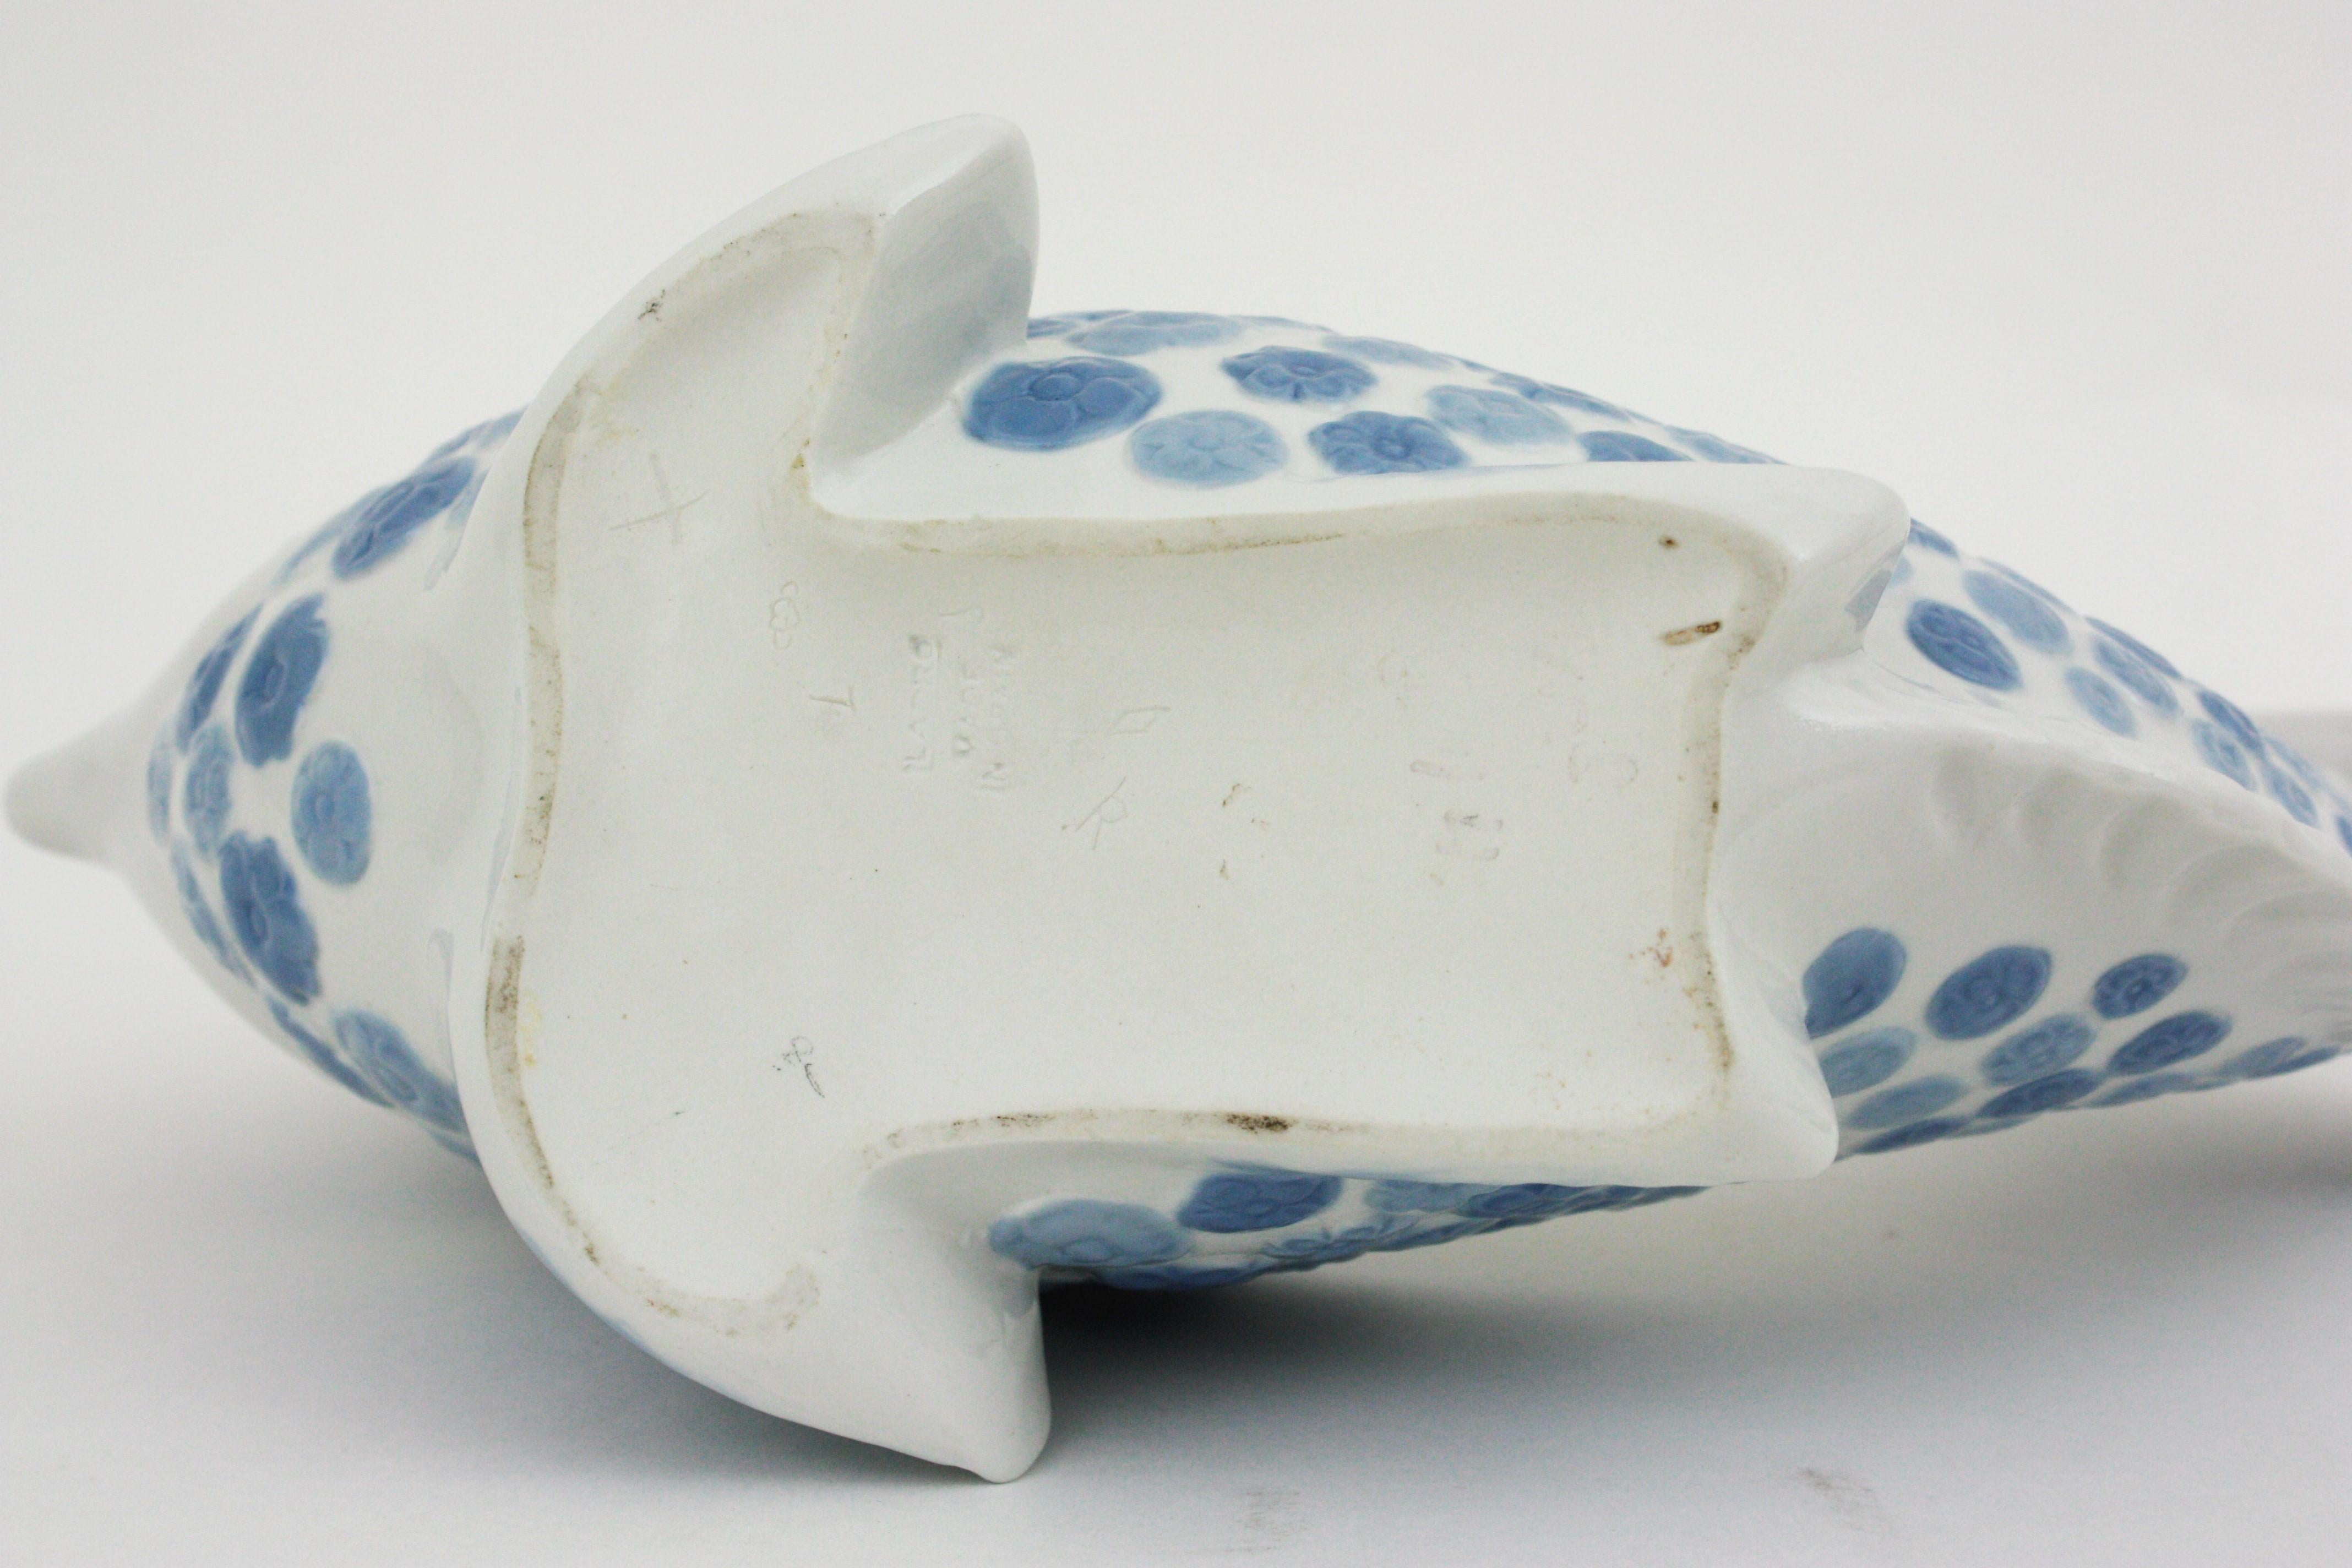 Lladró Porcelain Blue White Fish Centerpiece Vase Planter, Spain, 1970s For Sale 5